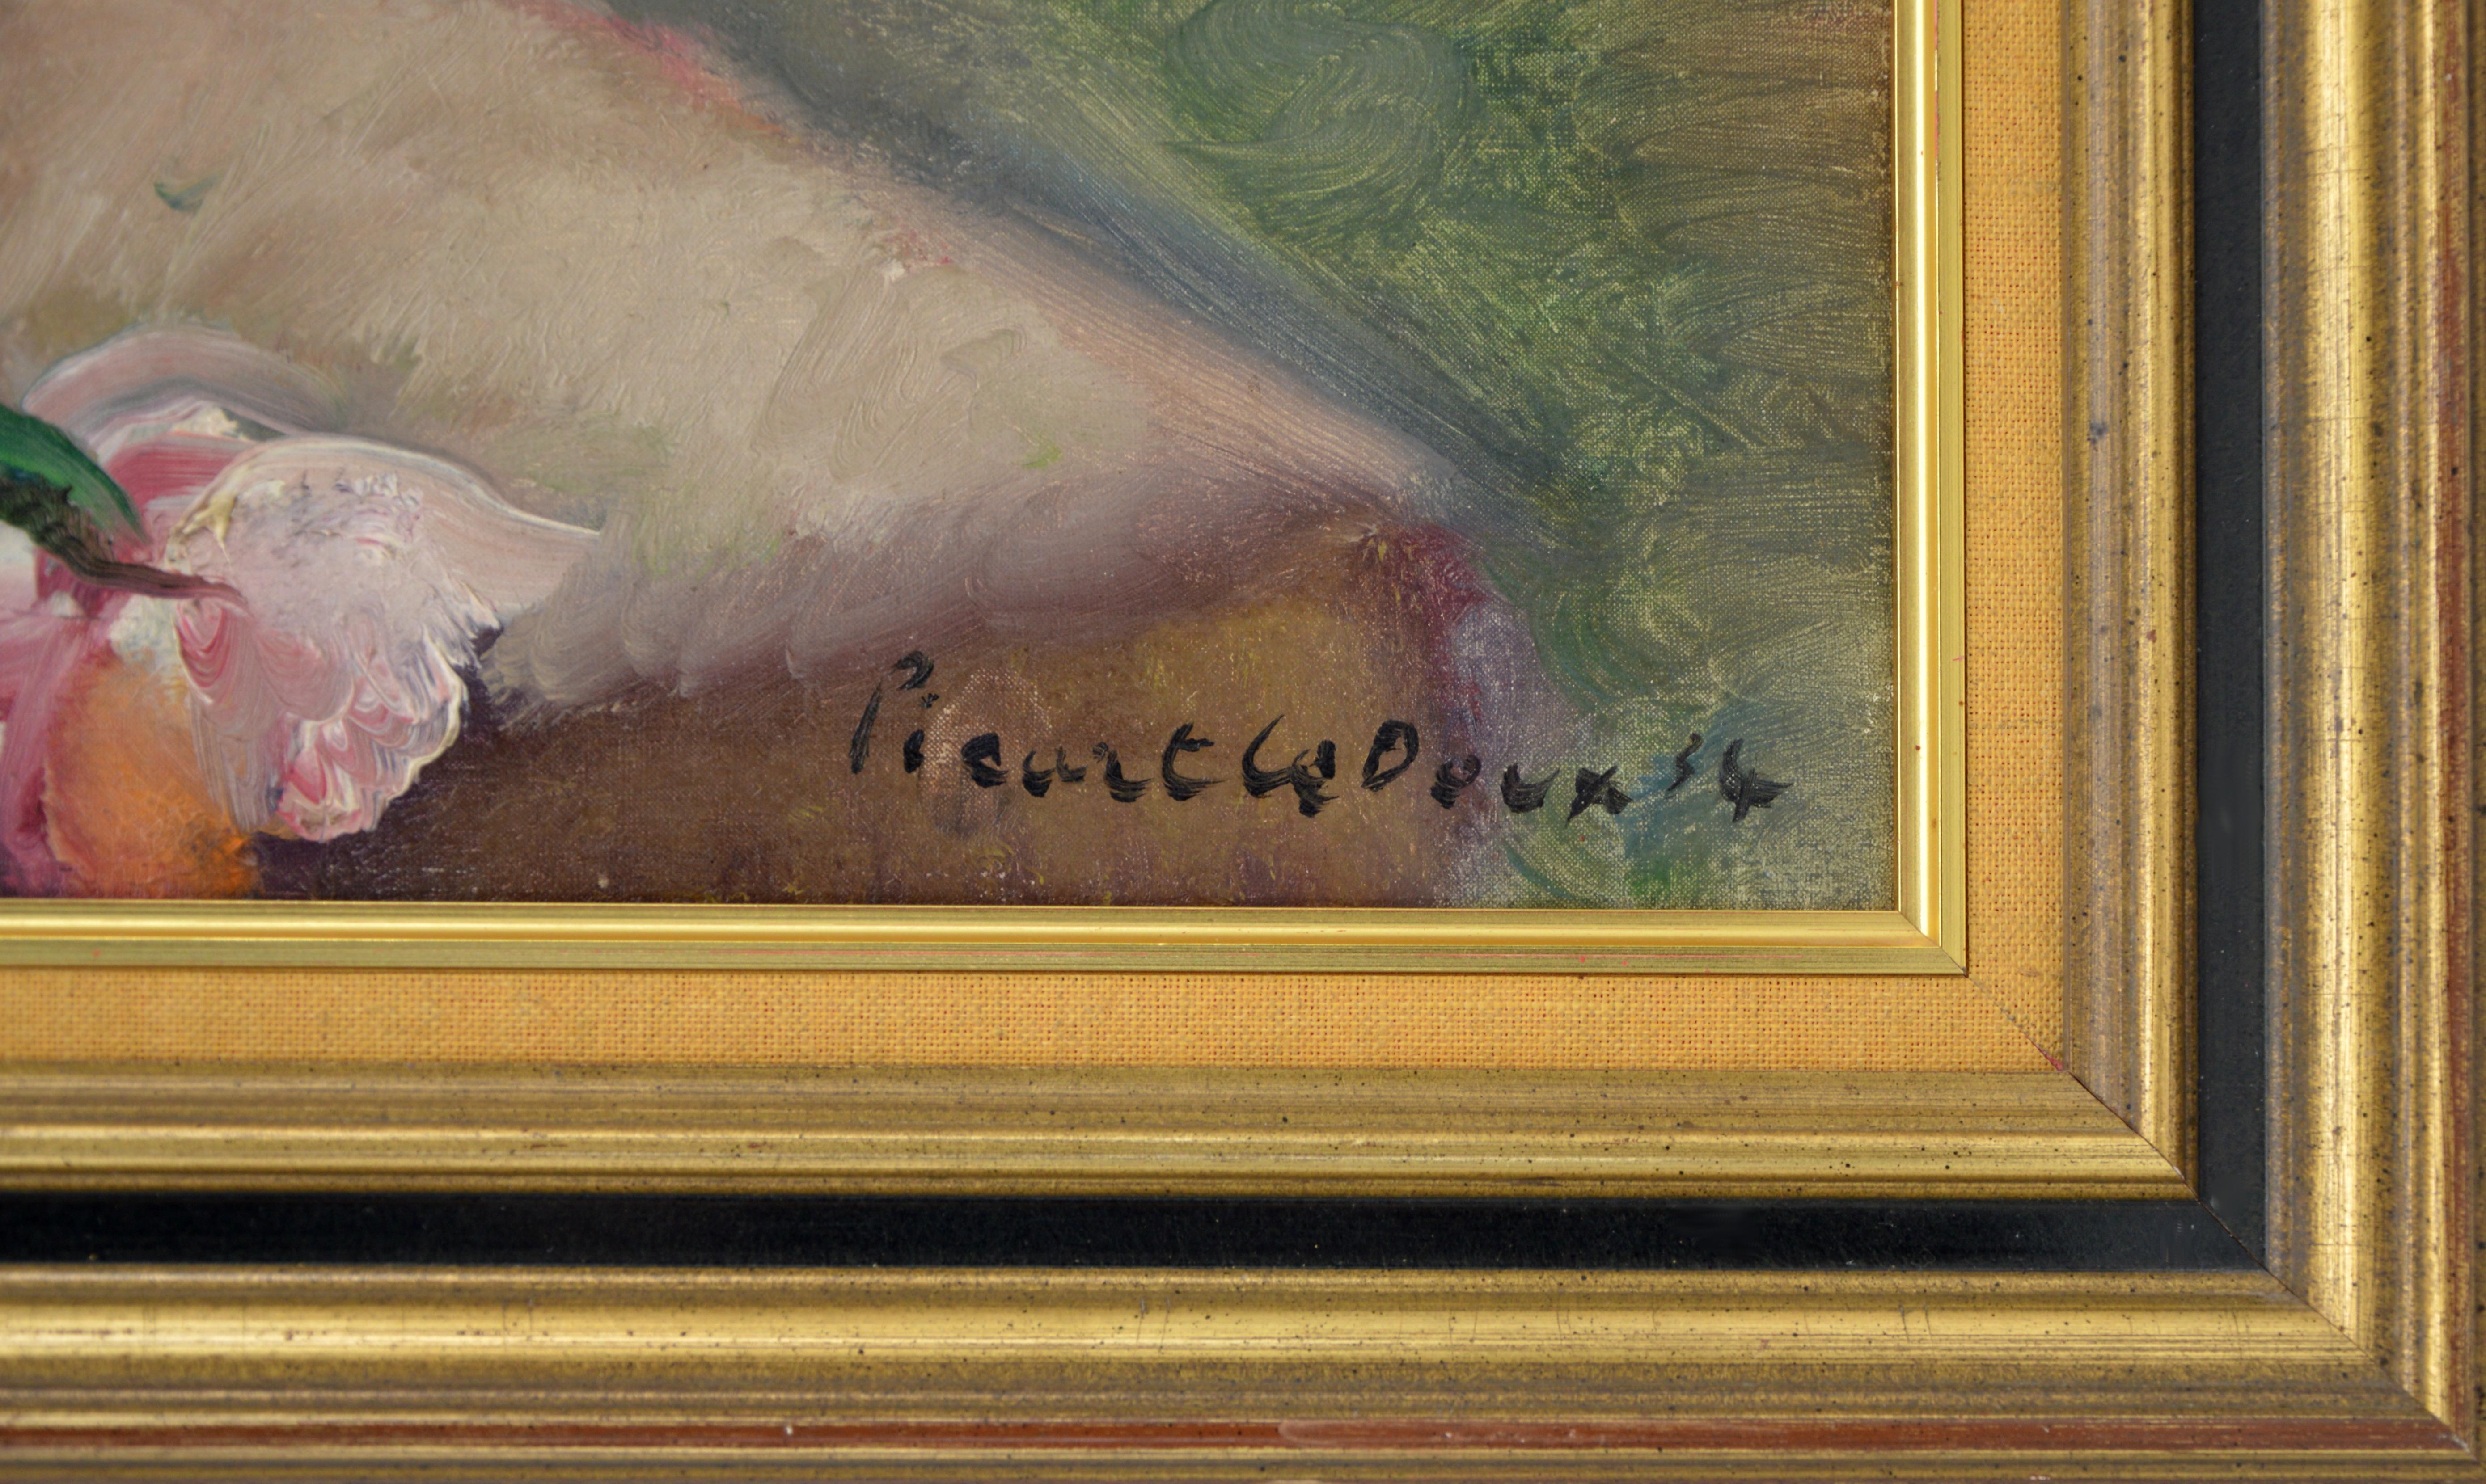 Huile sur toile de Charles PICART LE DOUX (1881-1959), France, 1934. Bouquet de fleurs sauvages. Œuvre d'art typique de la manière de Charles Picart Le Doux. Cependant, les couleurs robustes et contrastées confèrent à cette œuvre une puissance